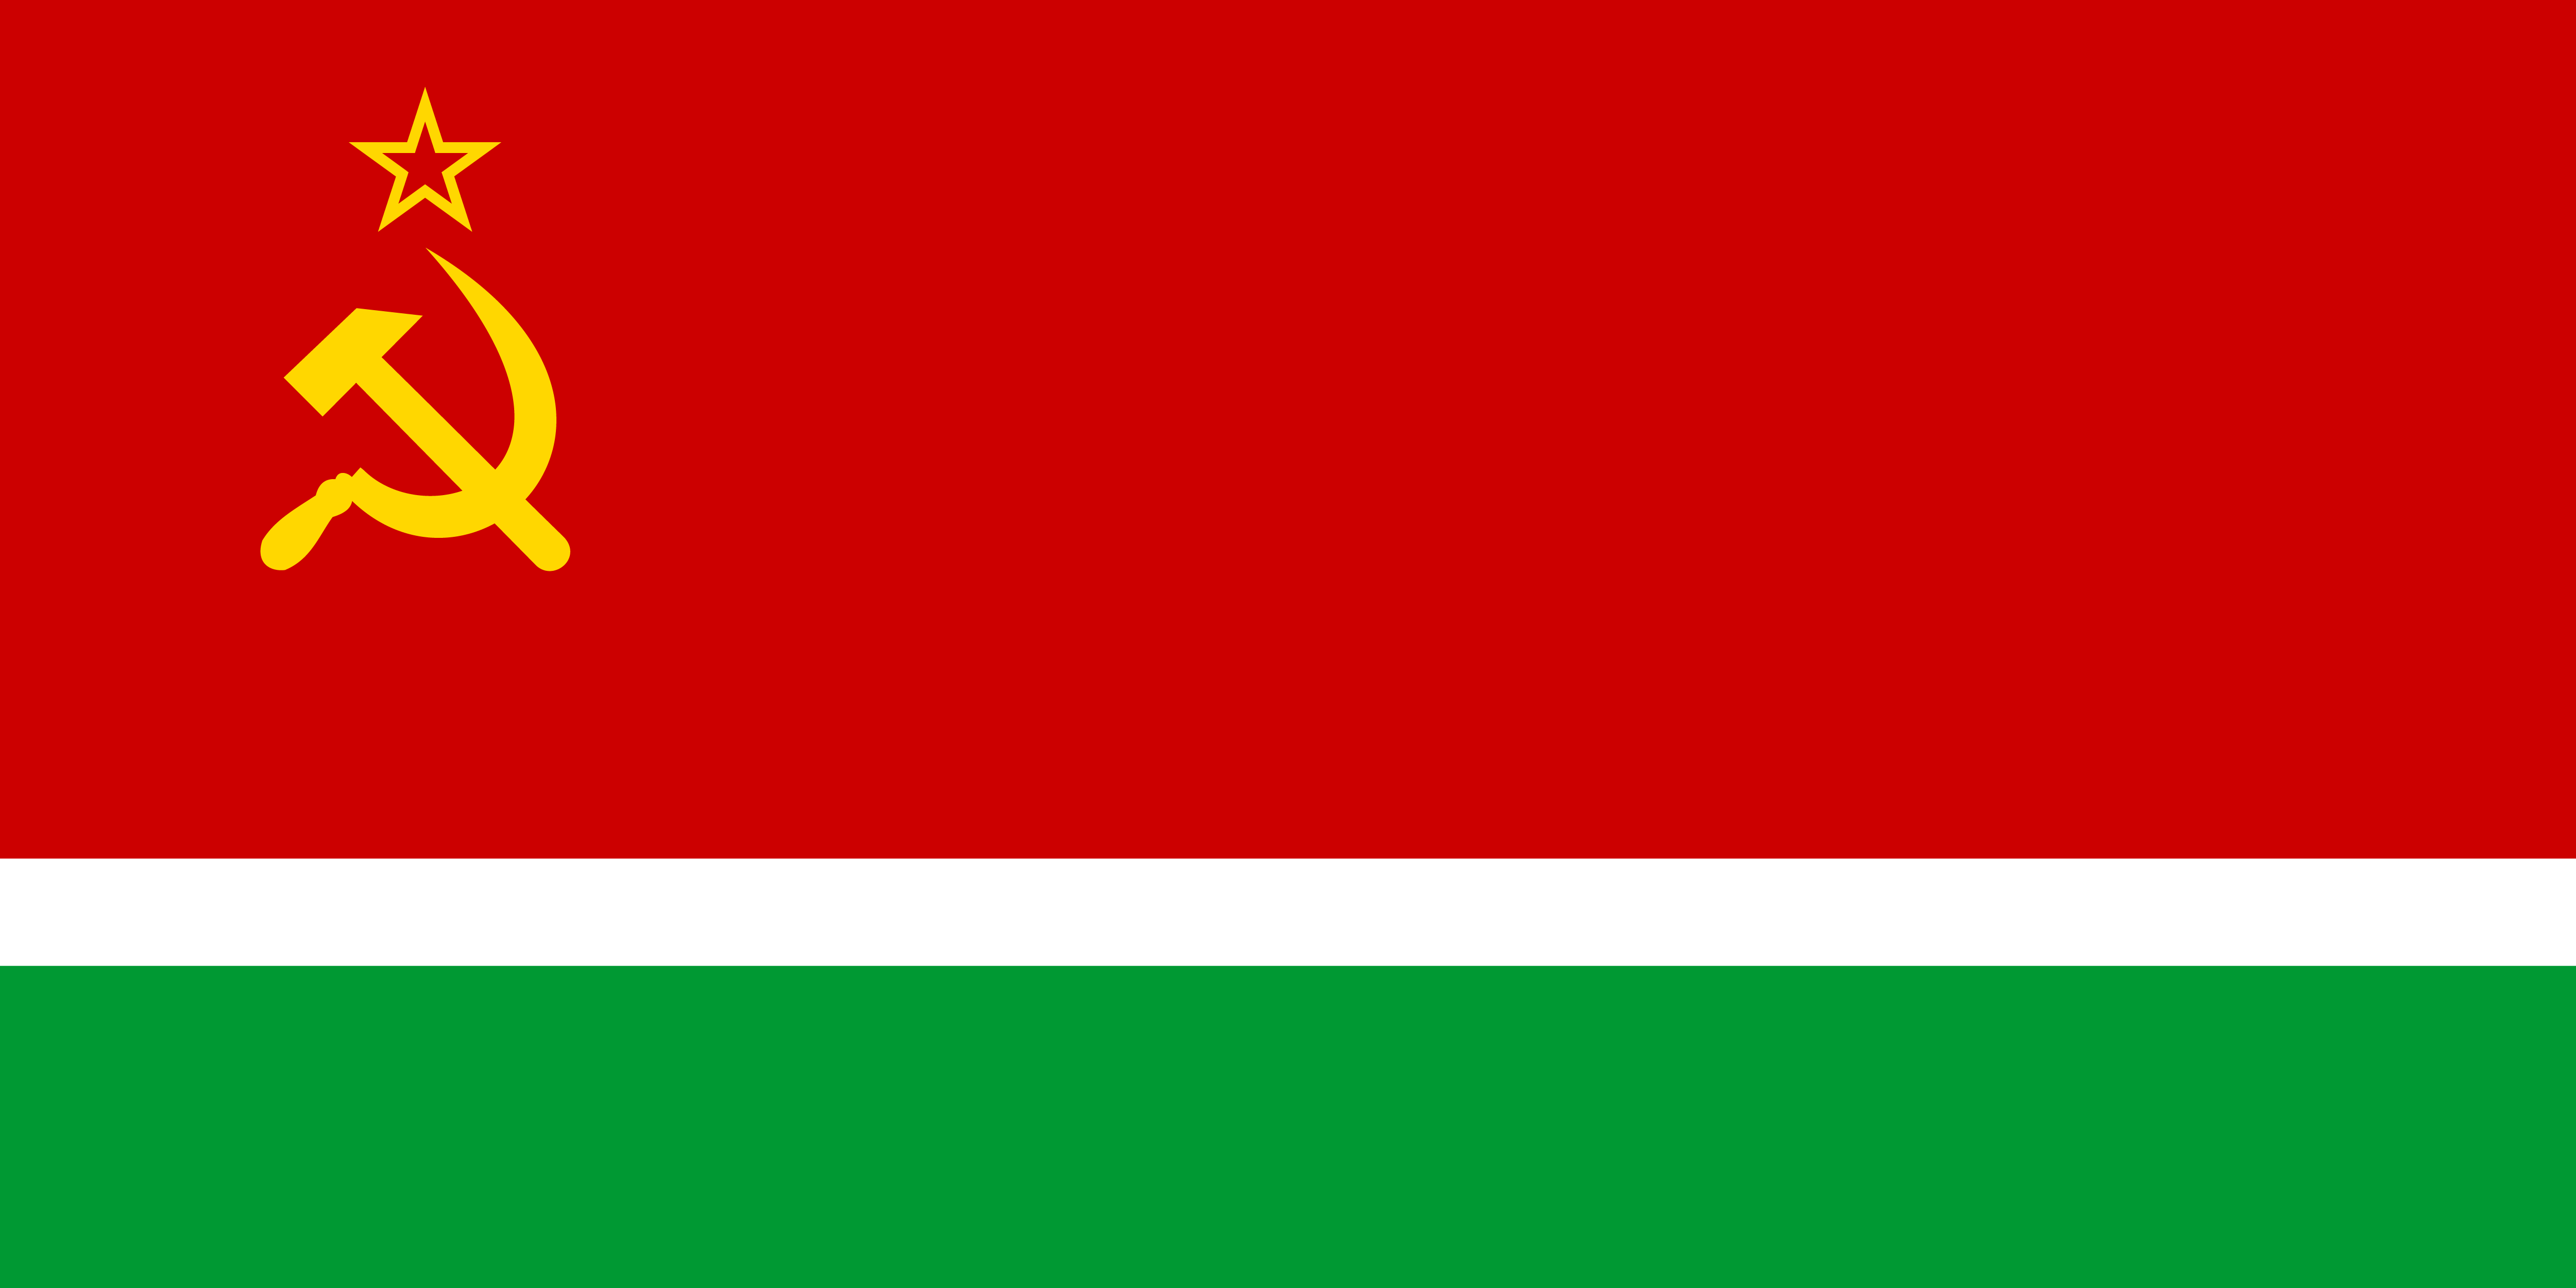 立陶宛蘇維埃社會主義共和國